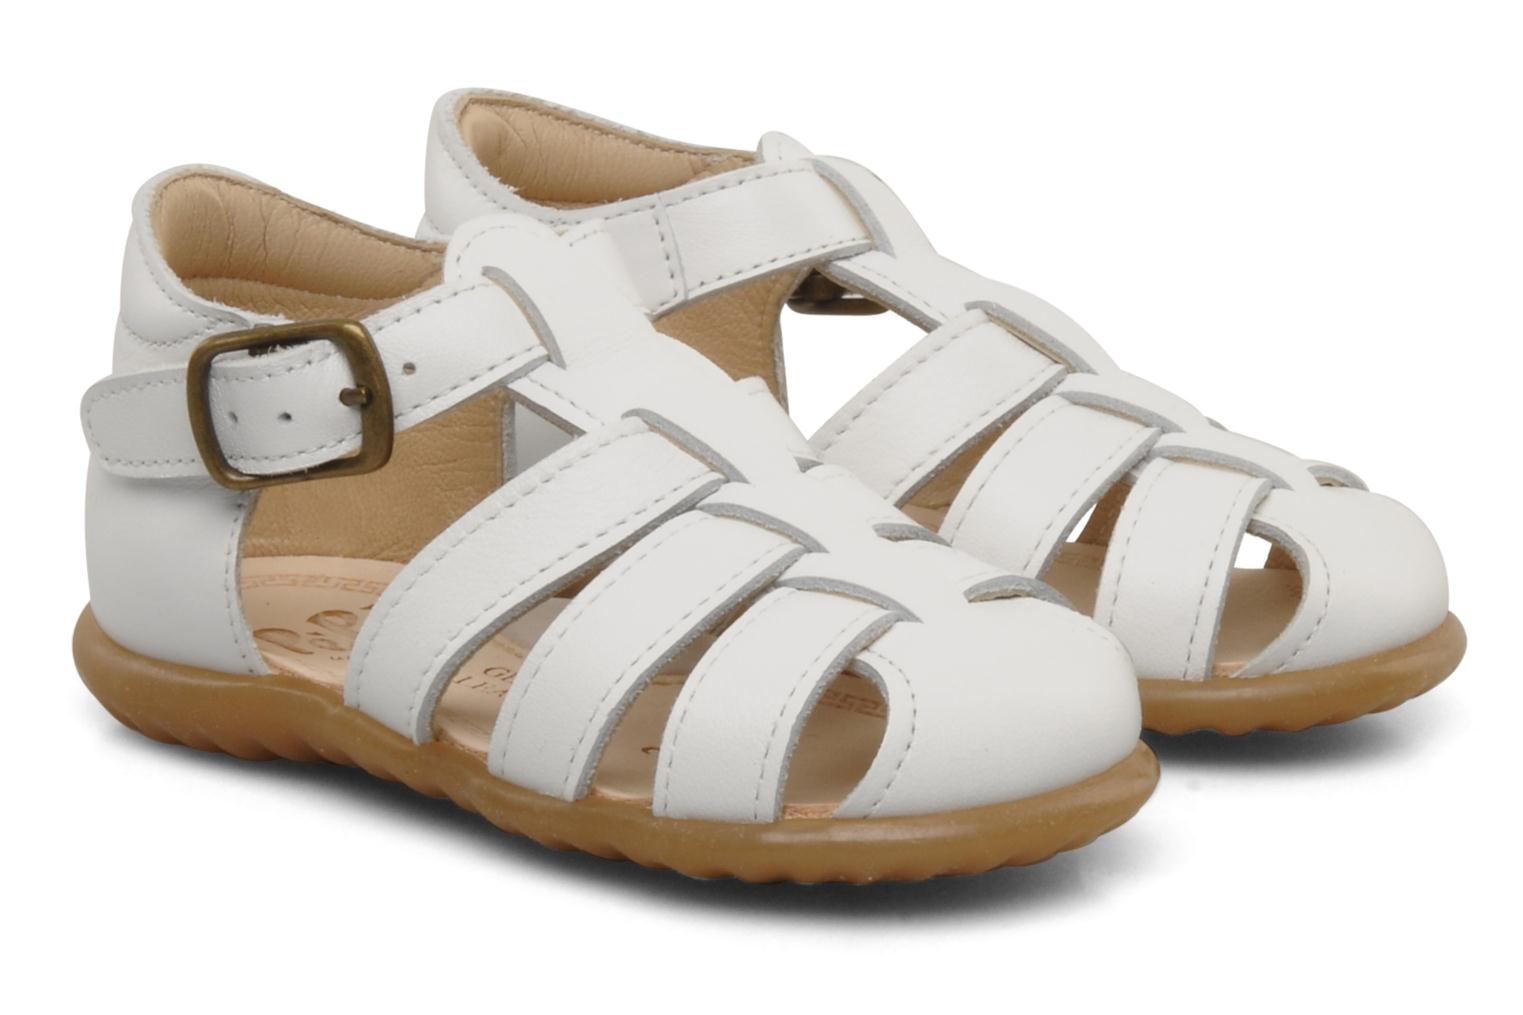 PèPè Bongo Sandals in White at Sarenza.co.uk (86052)